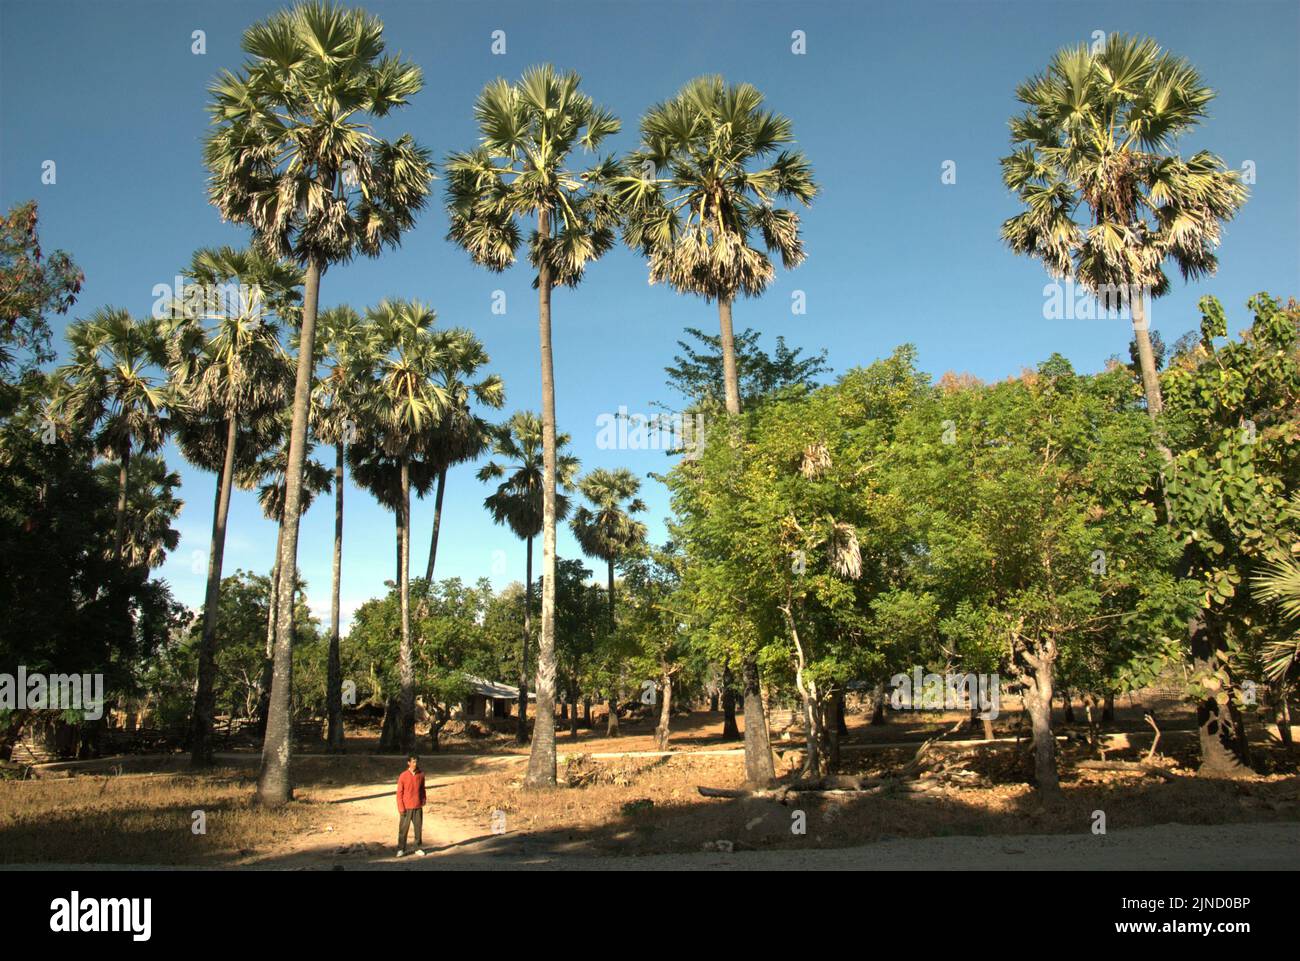 Un aldeano es fotografiado frente a árboles de clima seco, incluyendo la palmera de azúcar (Borassus flabellifer), que es valiosa para los habitantes de la isla Rote, en Nusa Tenggara Oriental, Indonesia. Foto de stock